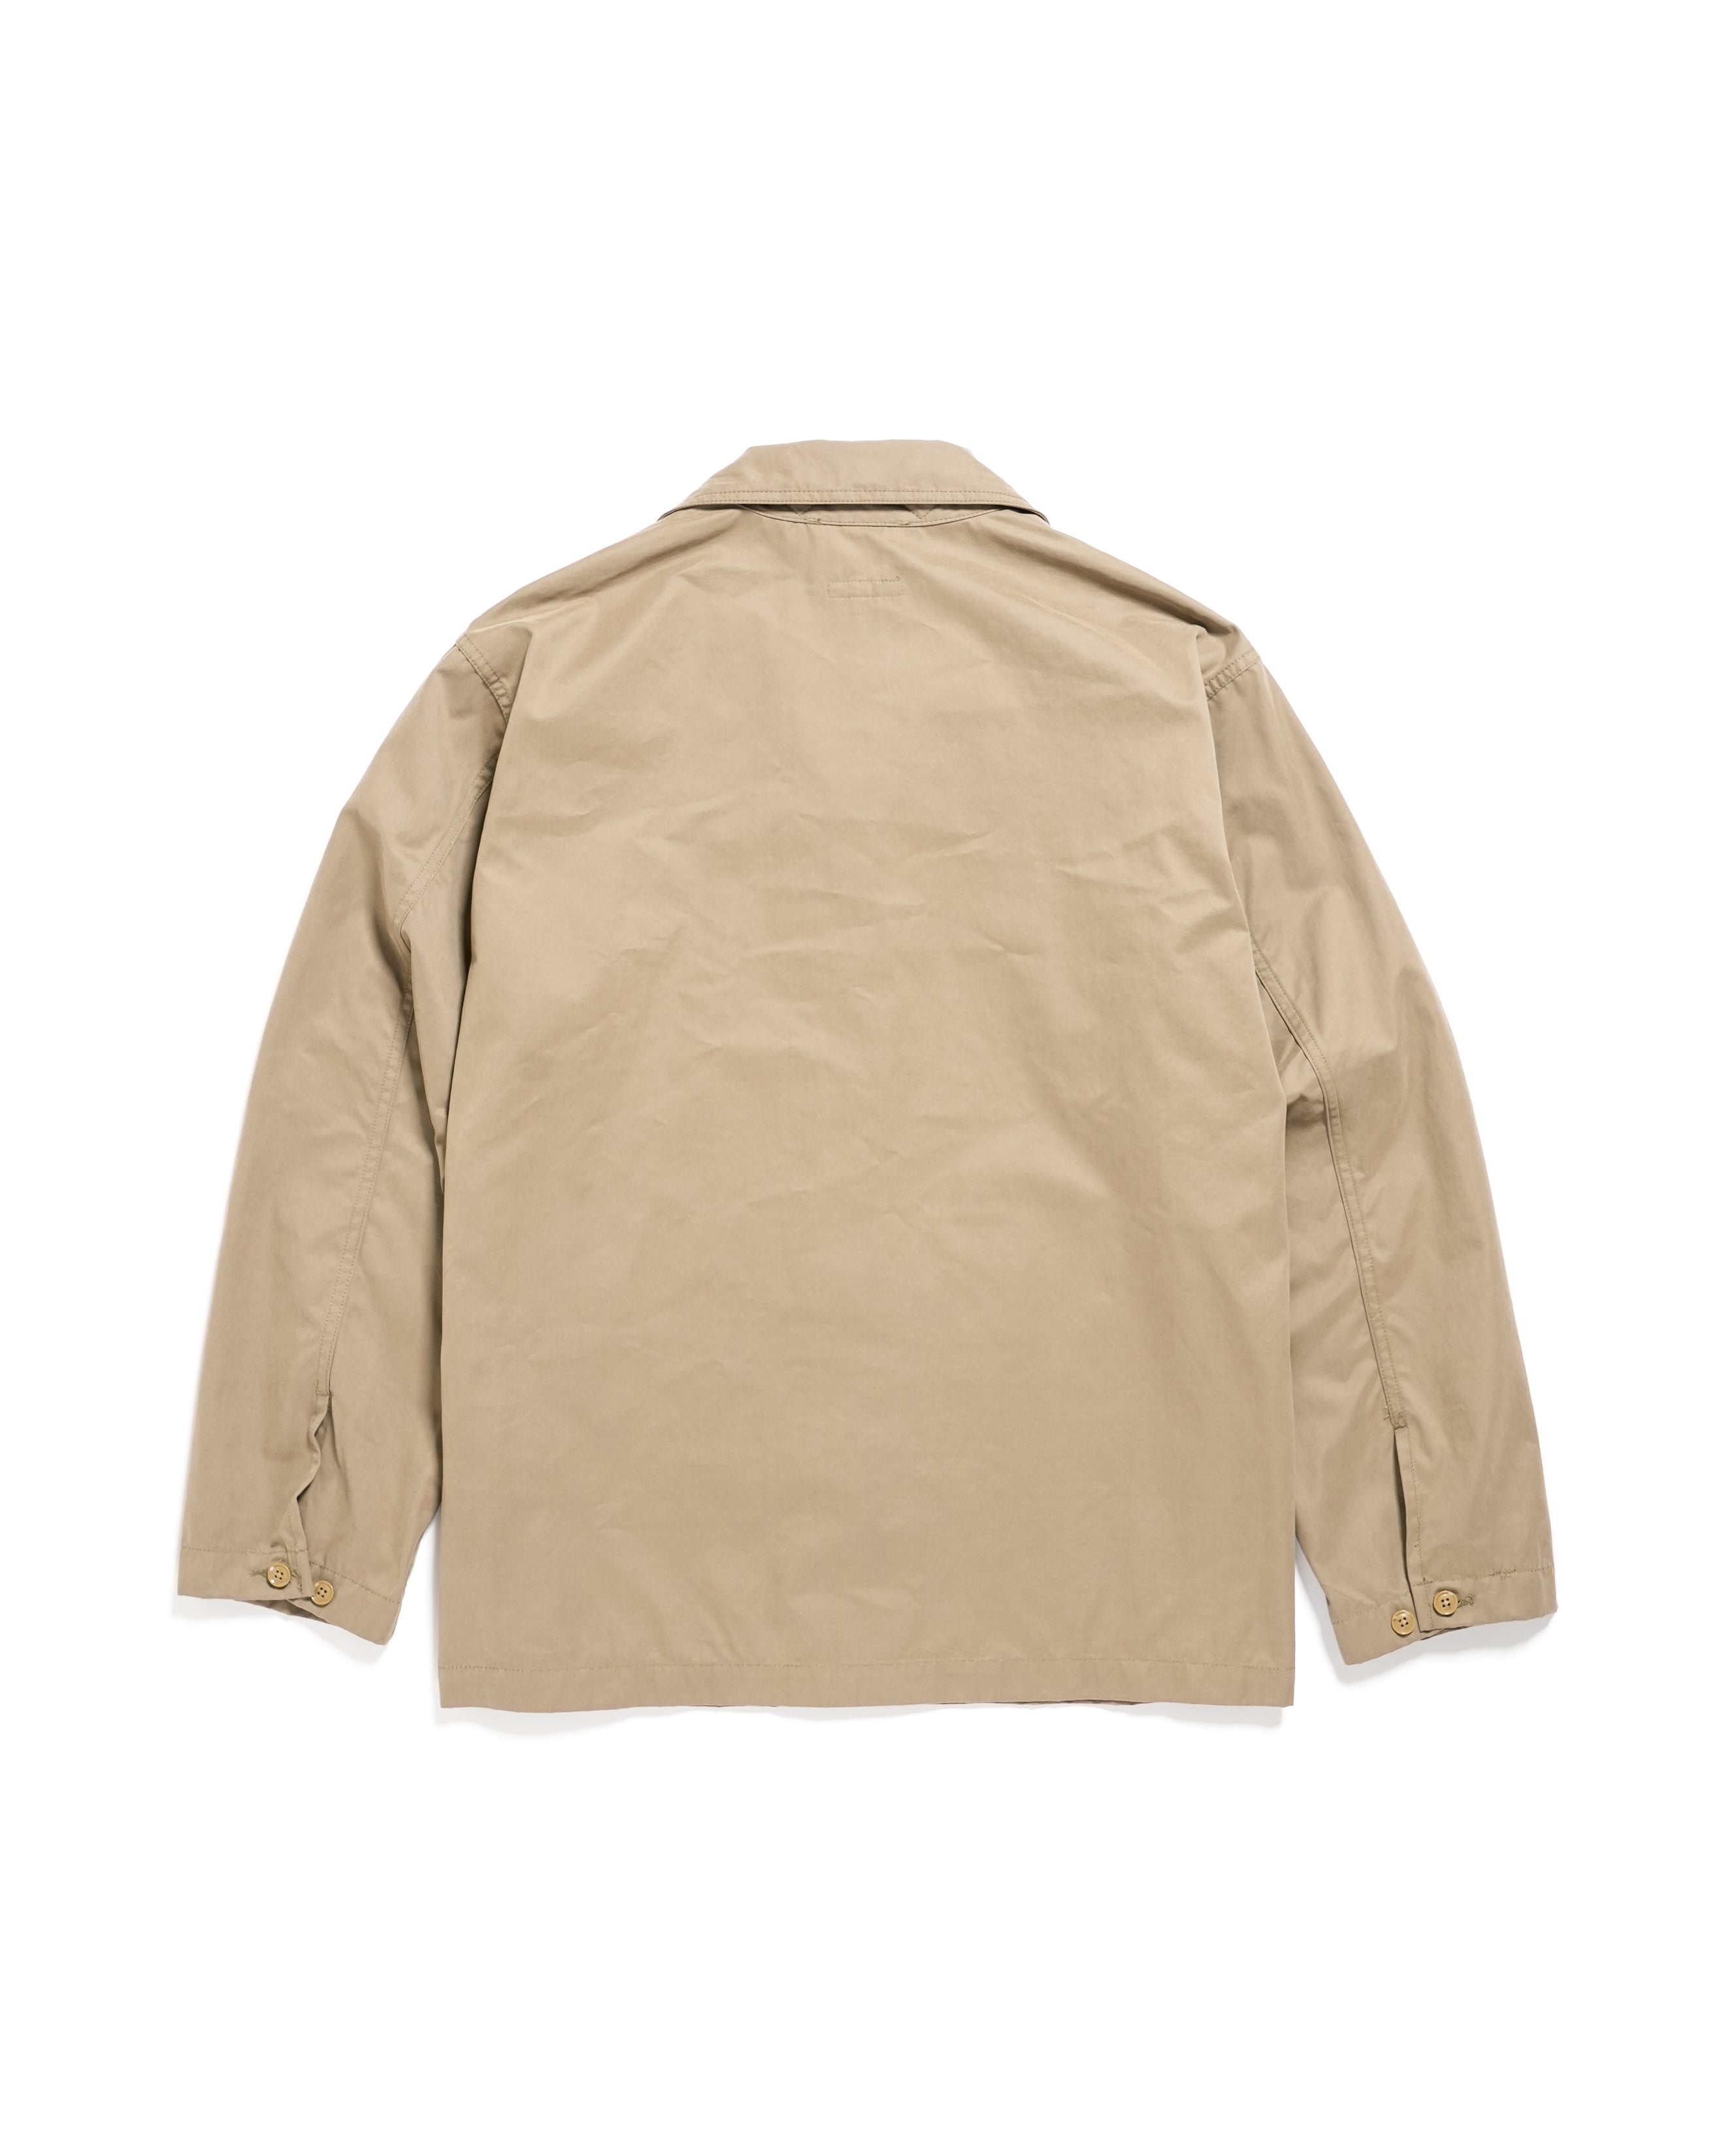 Fatigue Shirt Jacket - Khaki PC Coated Cloth - NNY SP